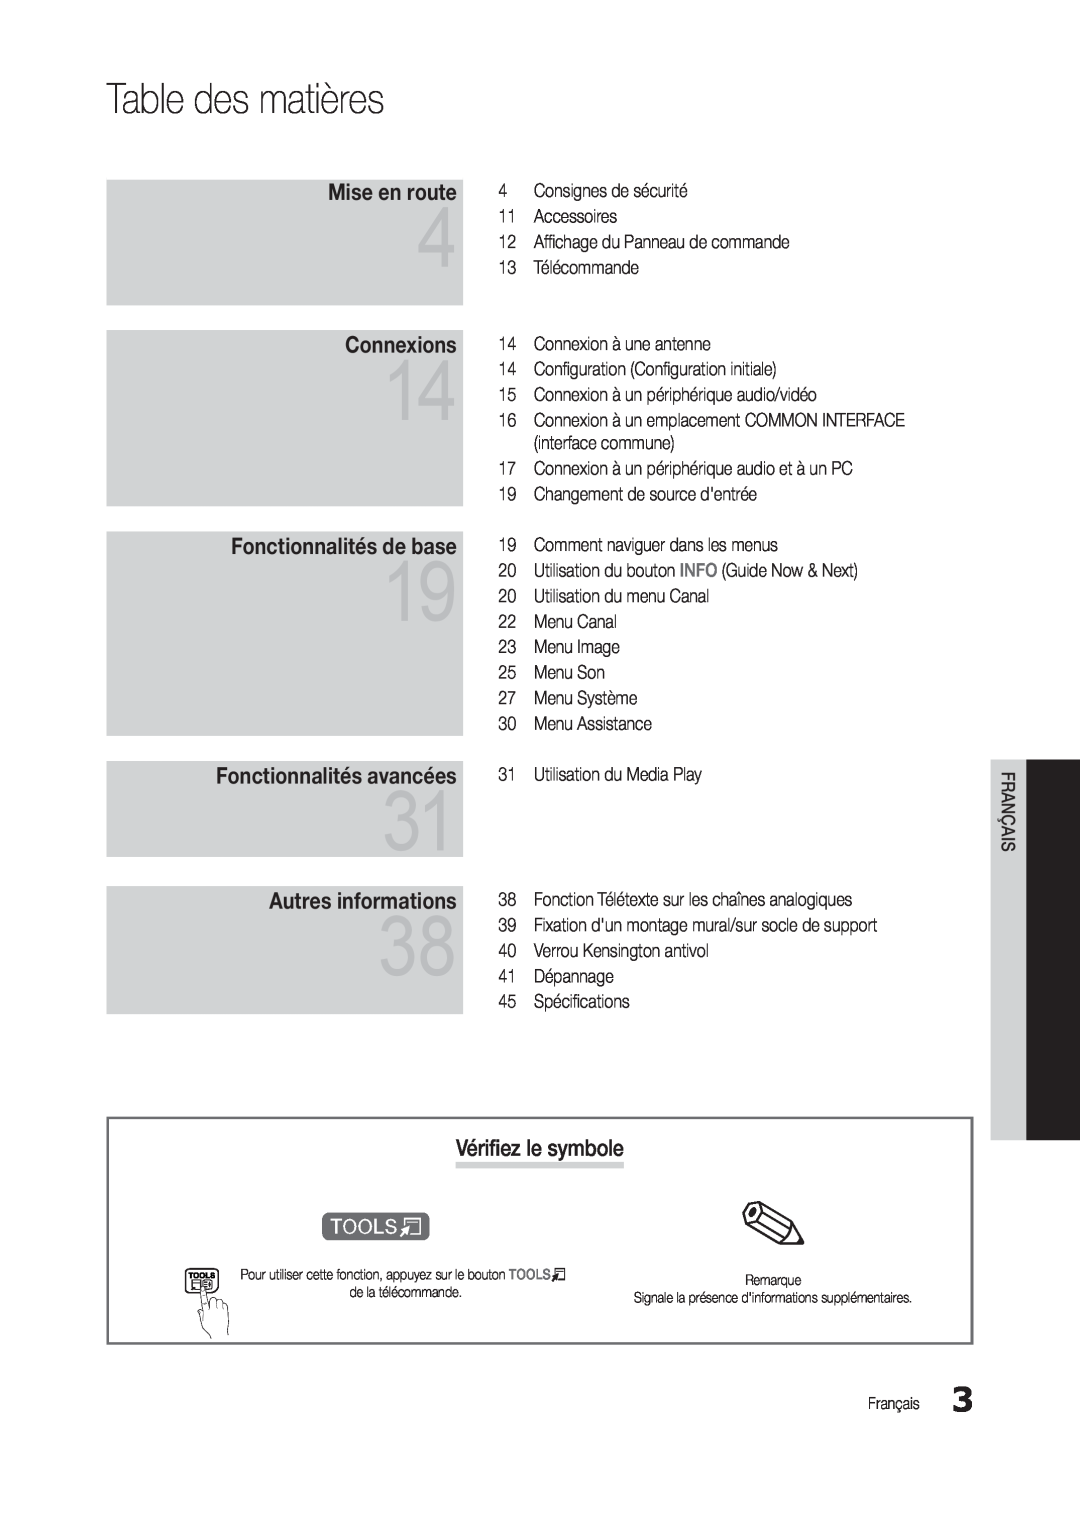 Samsung LT27C370EW/EN manual Table des matières, Vérifiez le symbole, Mise en route, Connexions, Fonctionnalités de base 